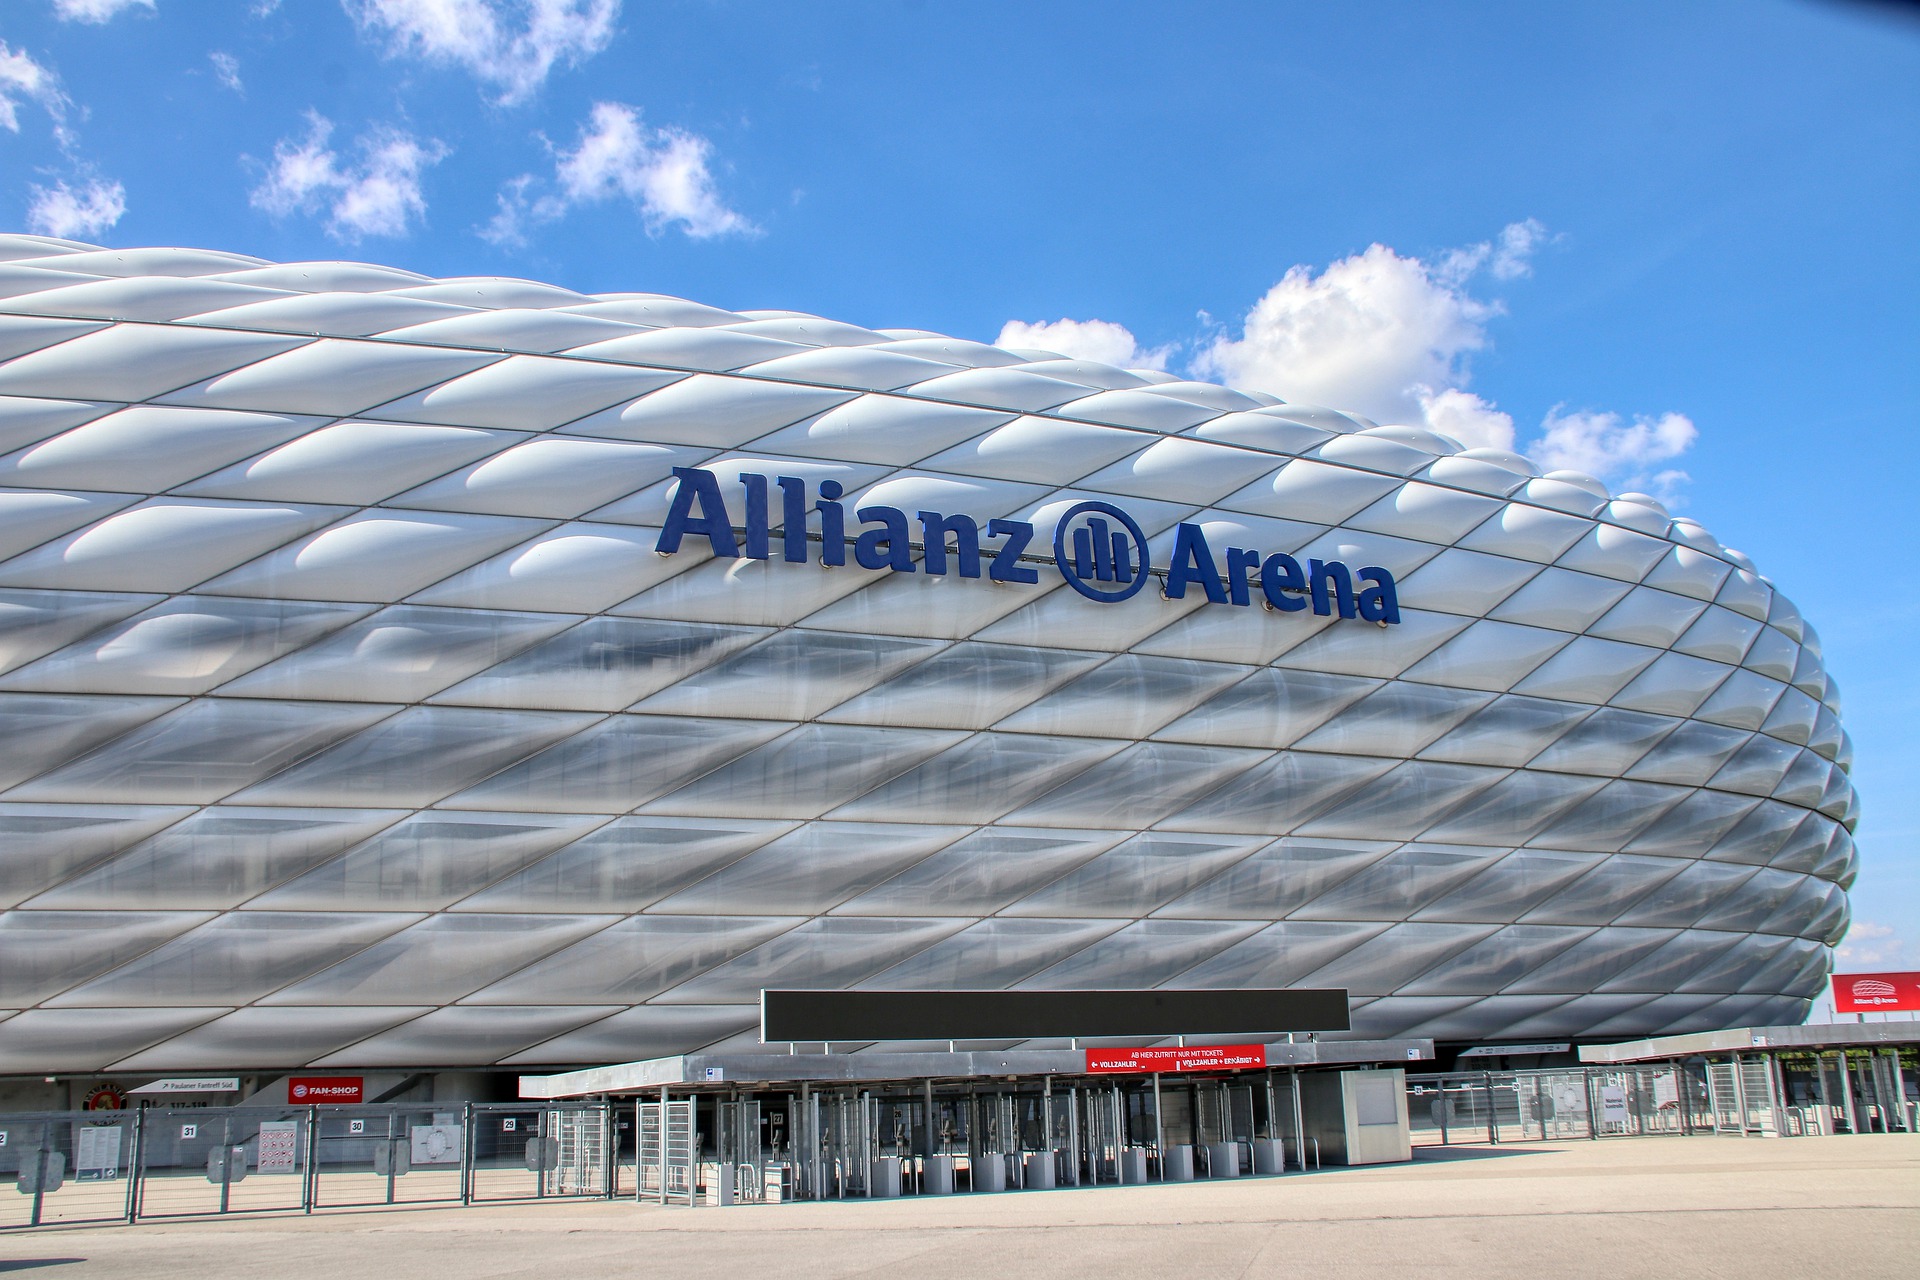 Allians Arena